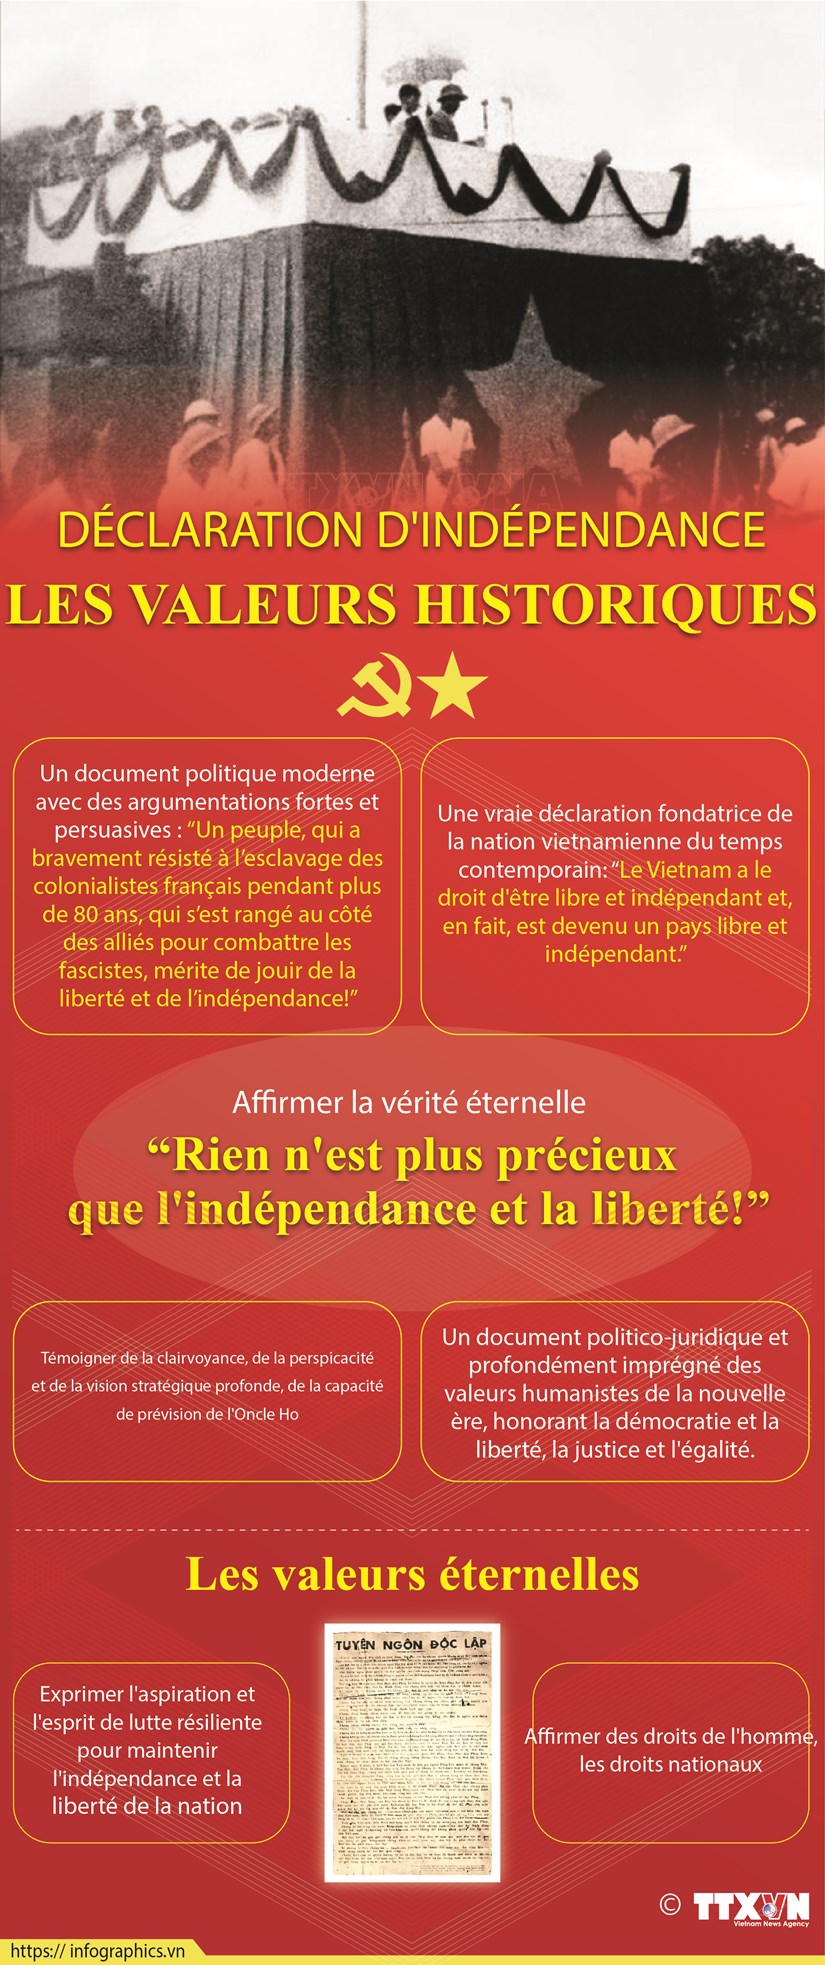 Declaration d'independance : les valeurs historiques hinh anh 1